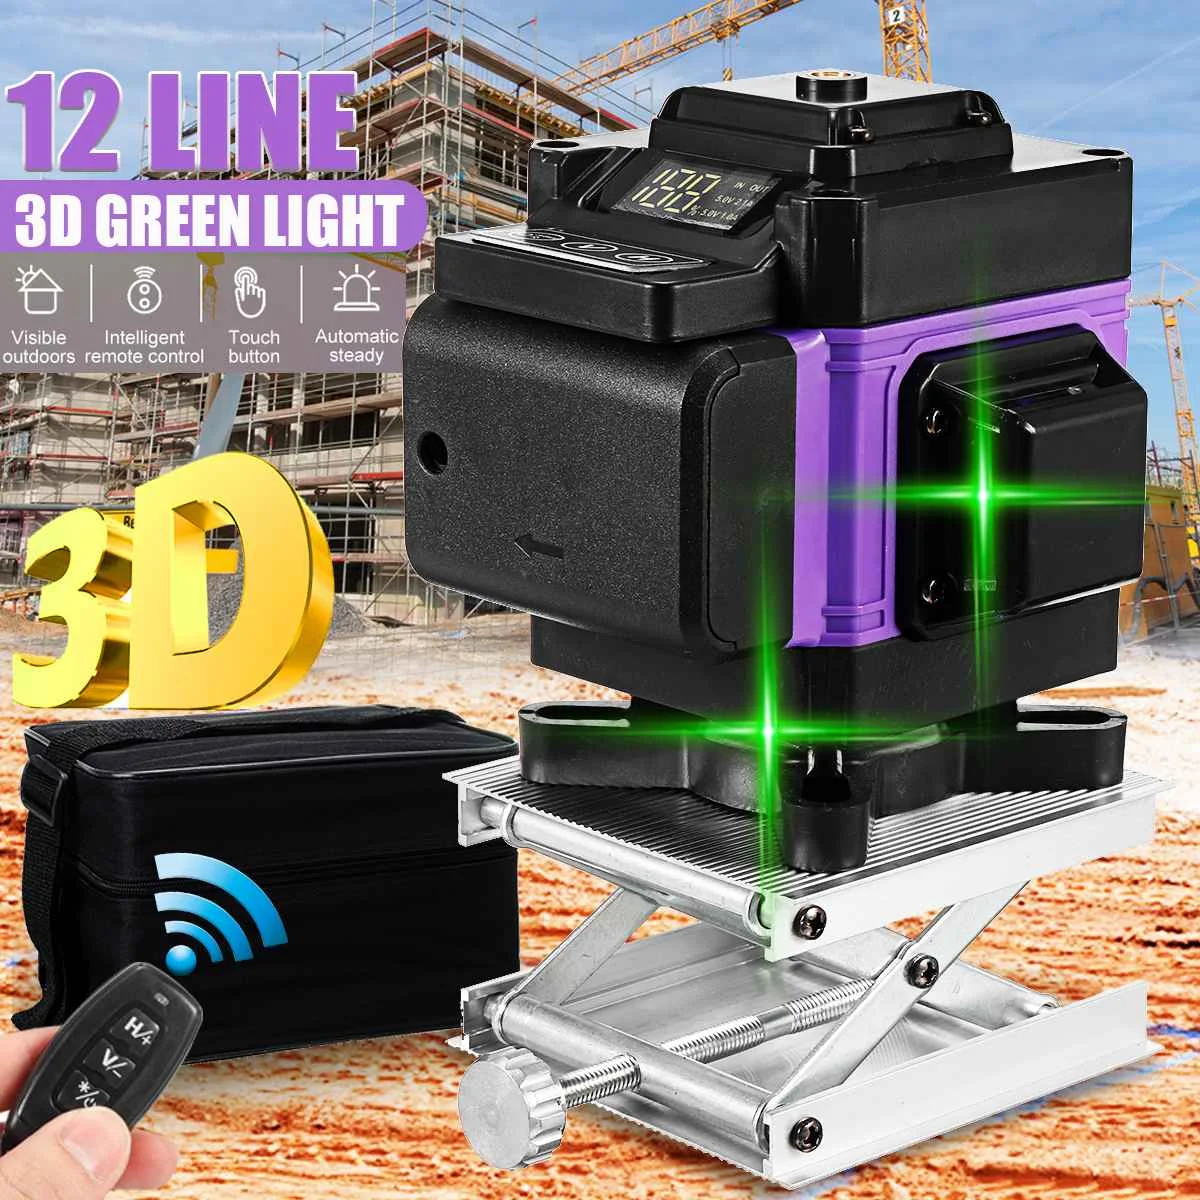 

Лазерный уровень, 12 линий, 3D, зеленый луч, дистанционное управление, автоматический самонивелирующийся, 360 градусов, горизонтальный, вертика...